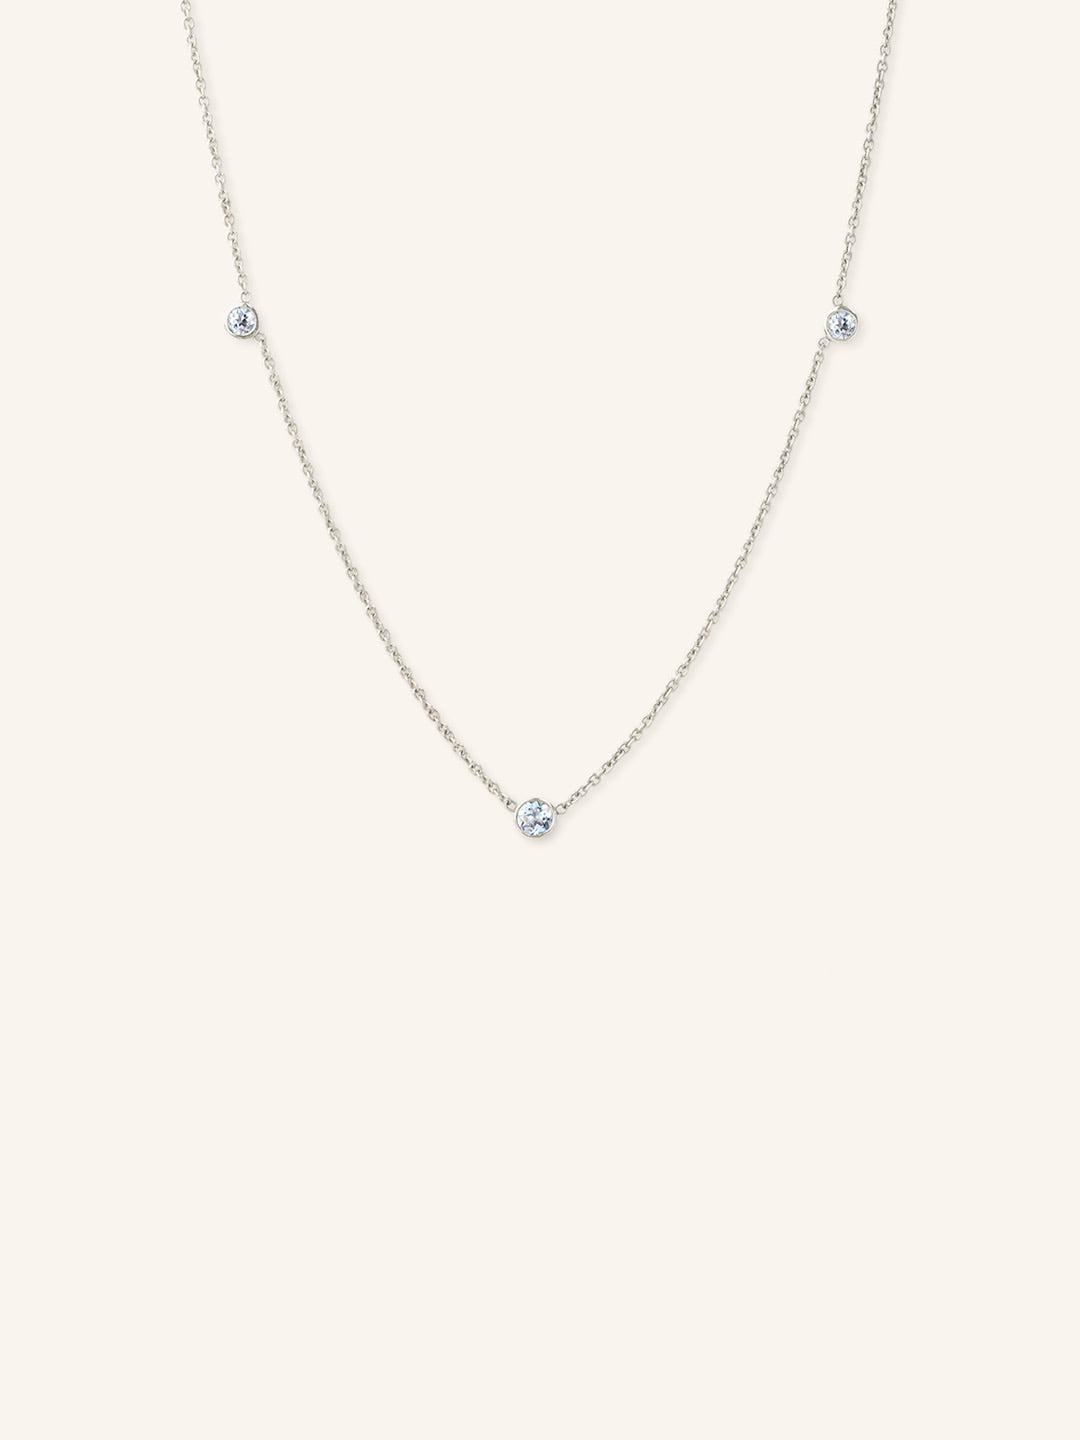 Orion's Aquamarine Necklace